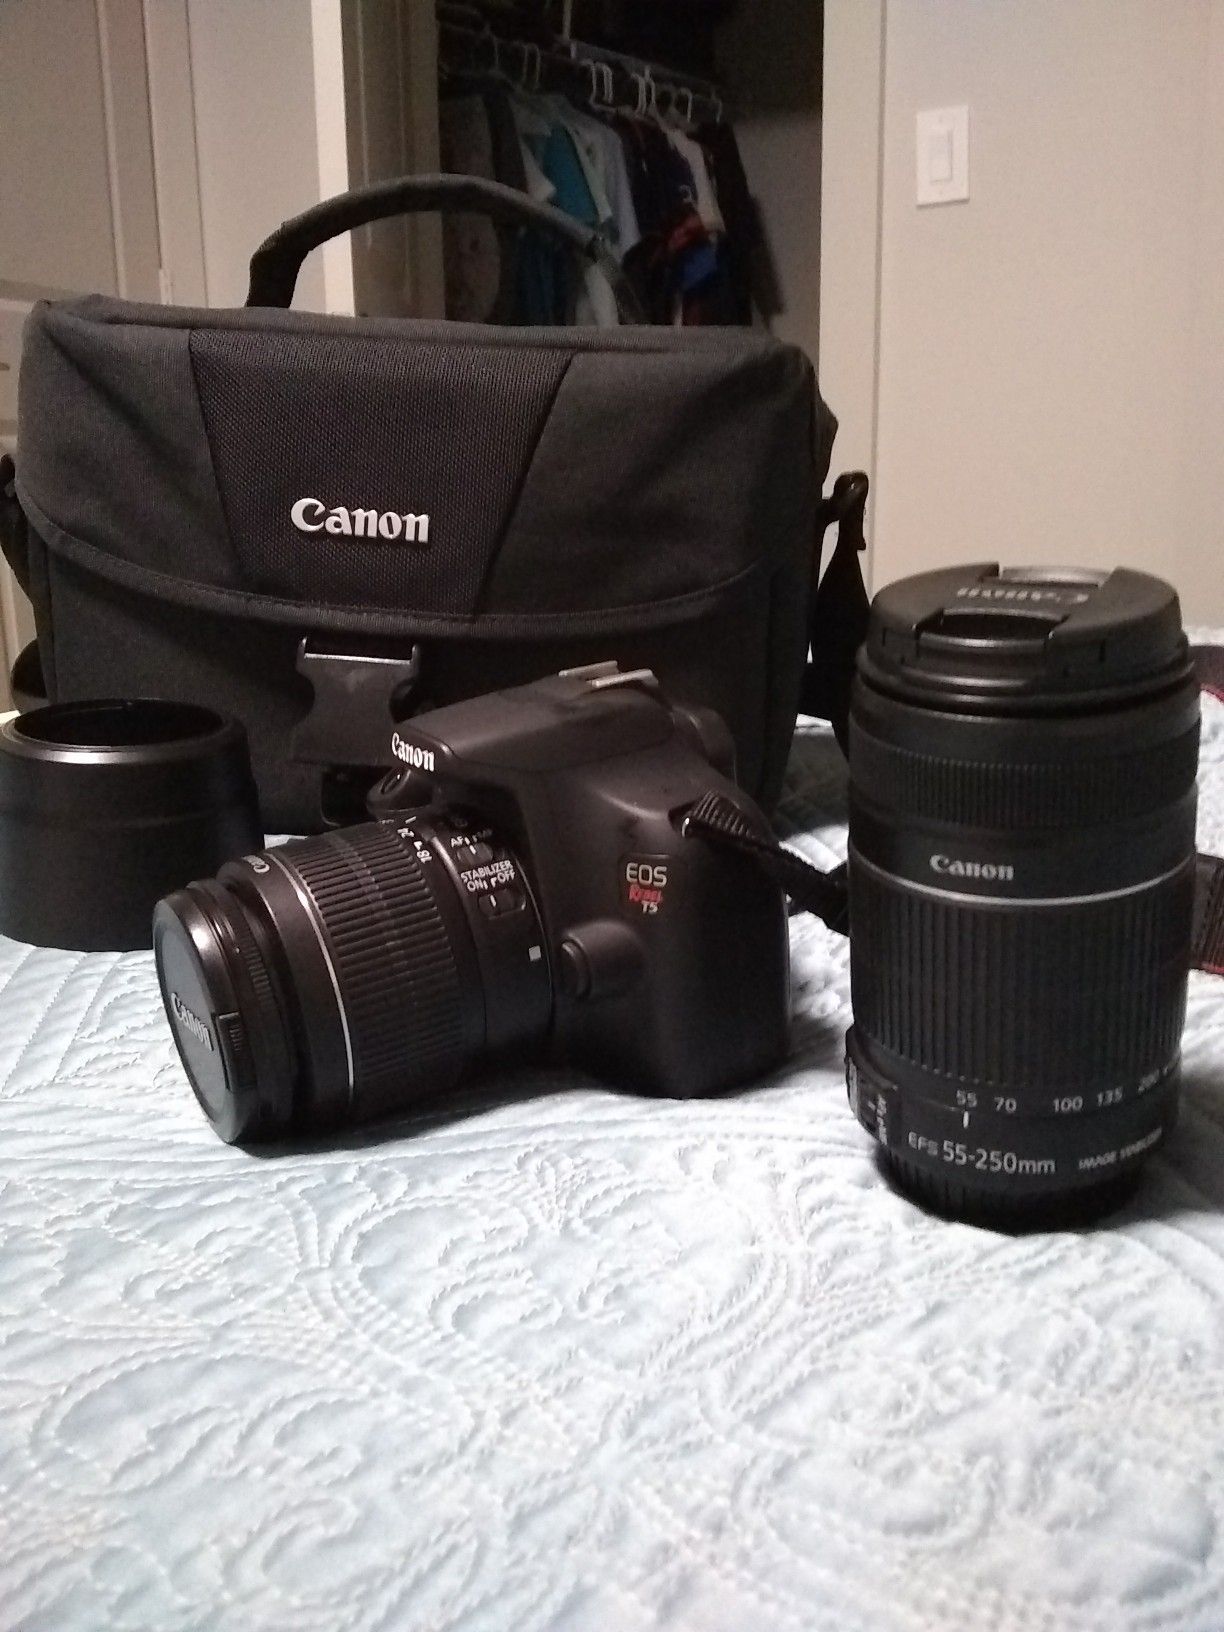 Canon T5 + lenses 18-55mm & 55-250mm